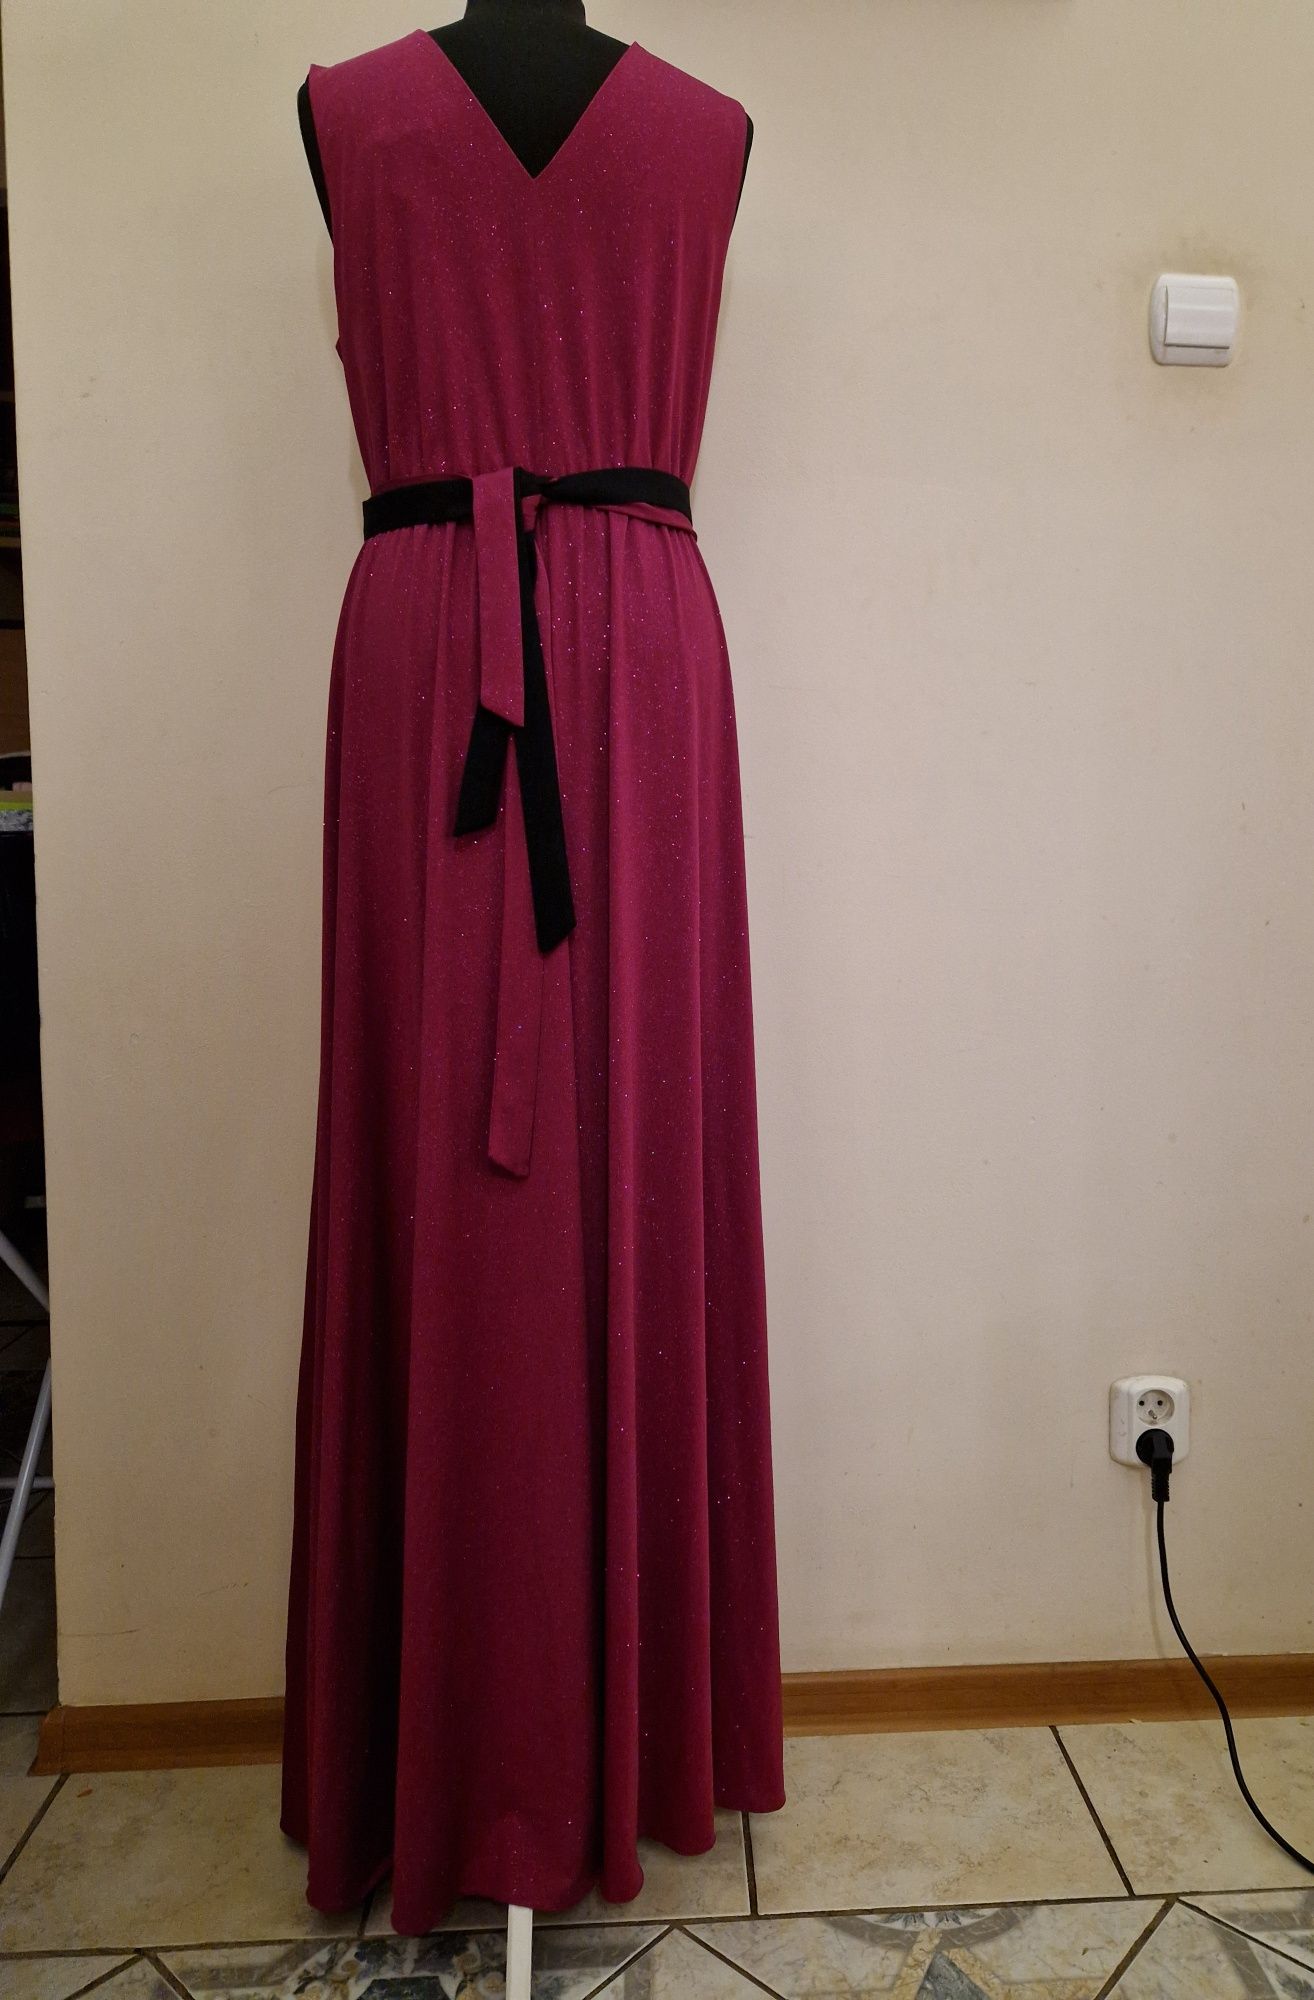 Fantastyczna sukienka Salma, uroczystości, wesela, XL